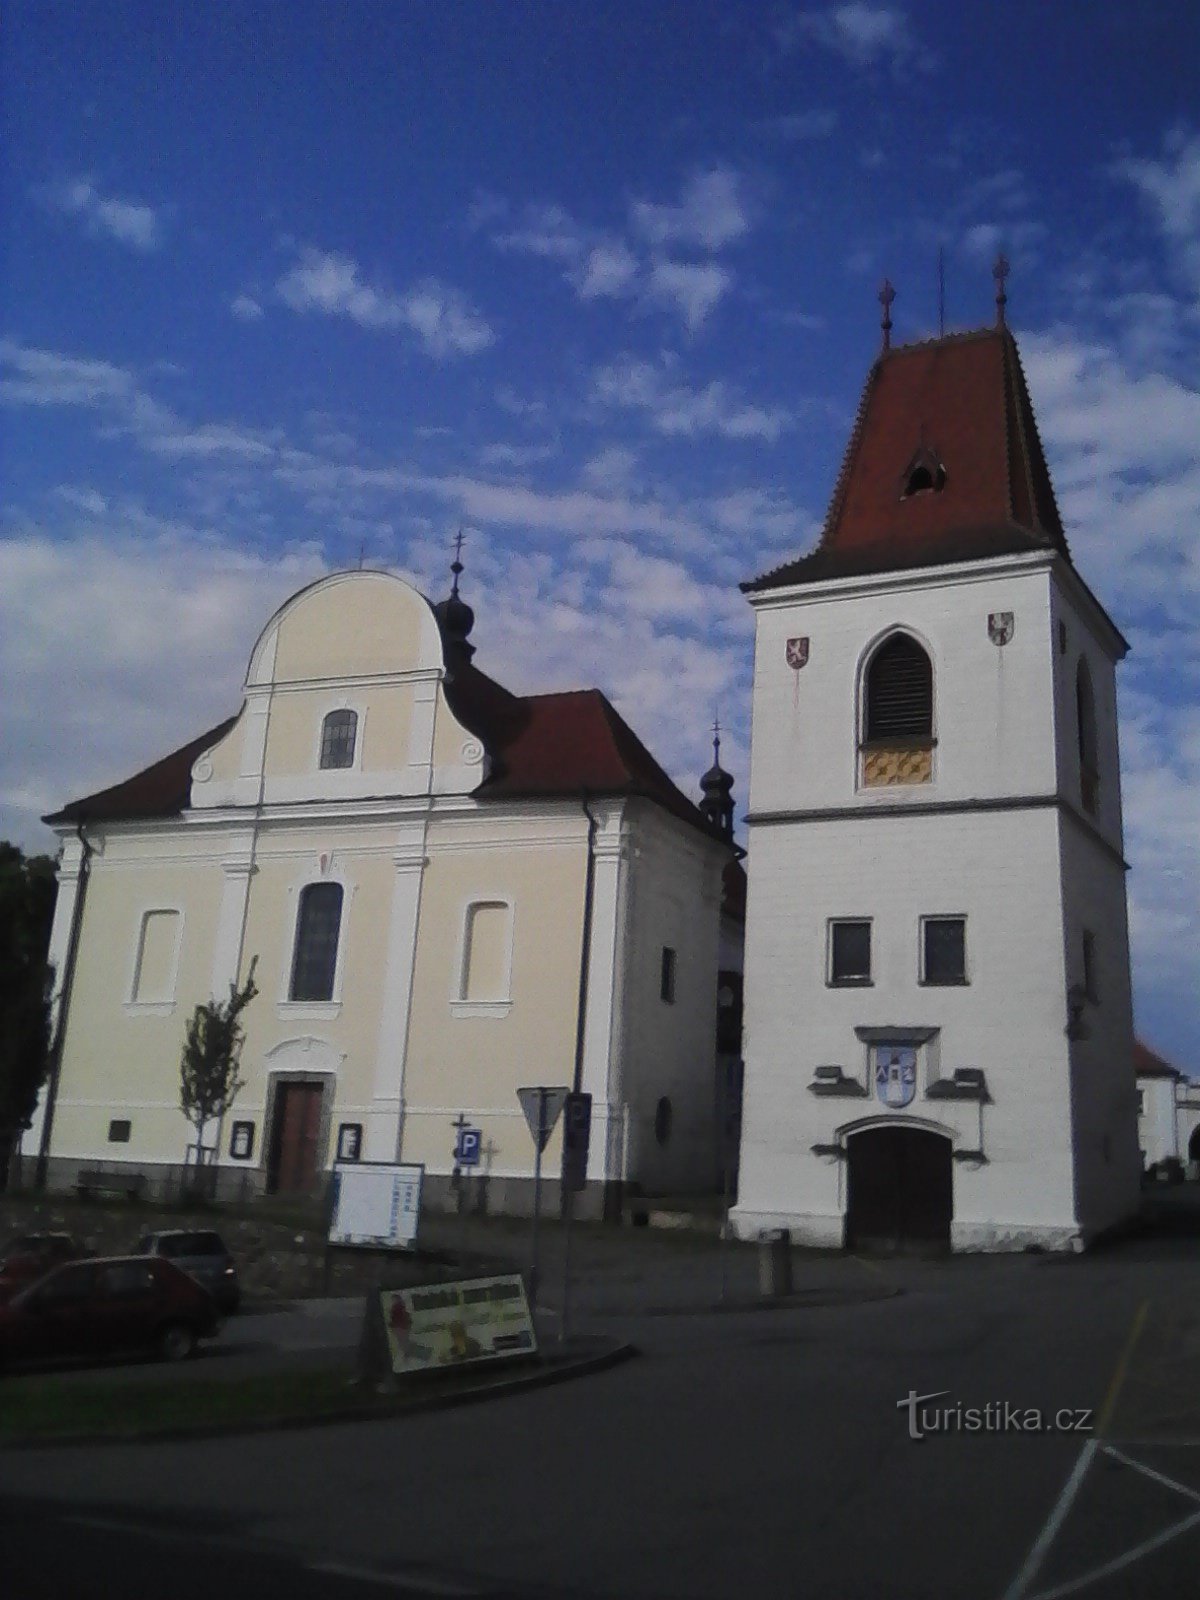 1. 鐘楼と聖マリア教会ムラダー・ヴォジツァのマーティン